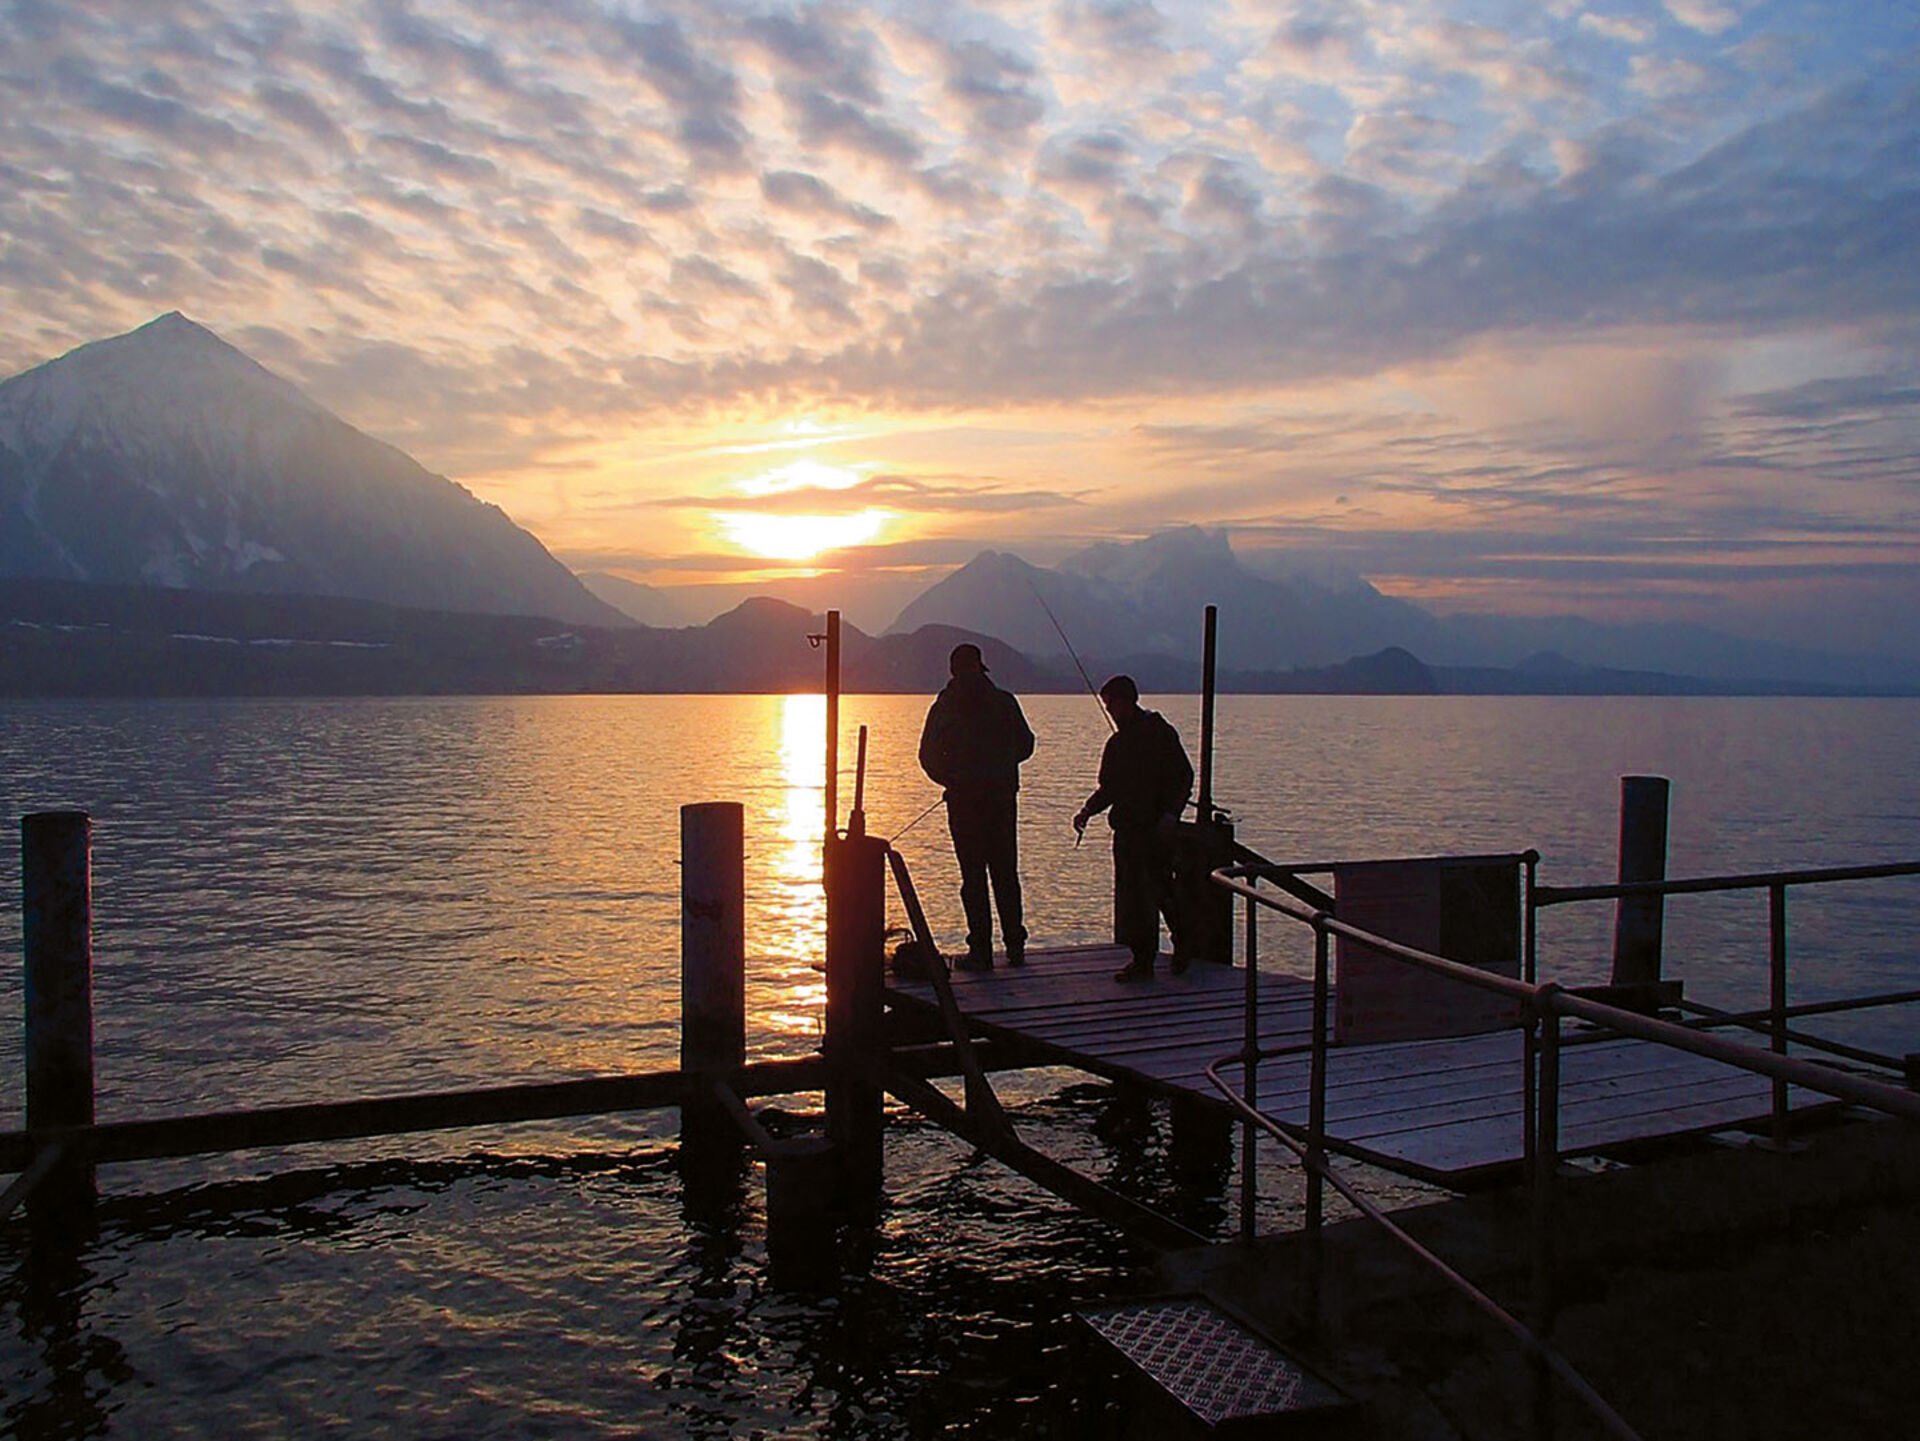  Ein schöner Sonnenuntergang am See; so kann man die Fischerei geniessen. Die Abendstunden sollten sowieso nicht unterschätzt werden.  